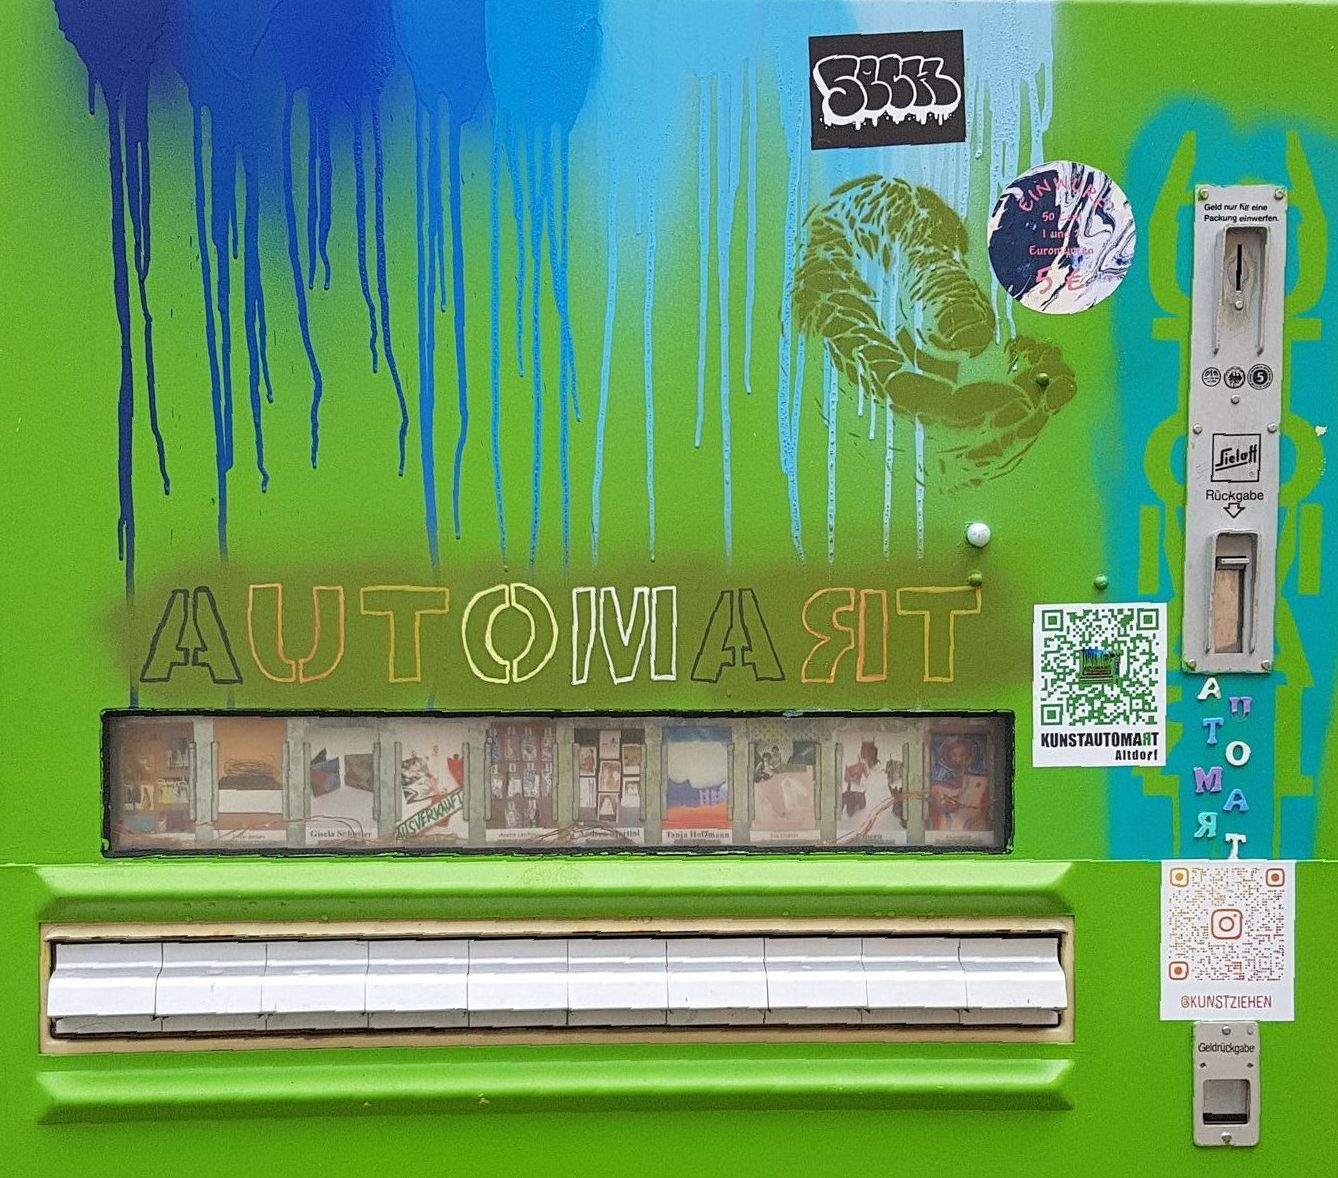 Kunstautomat Altdorf